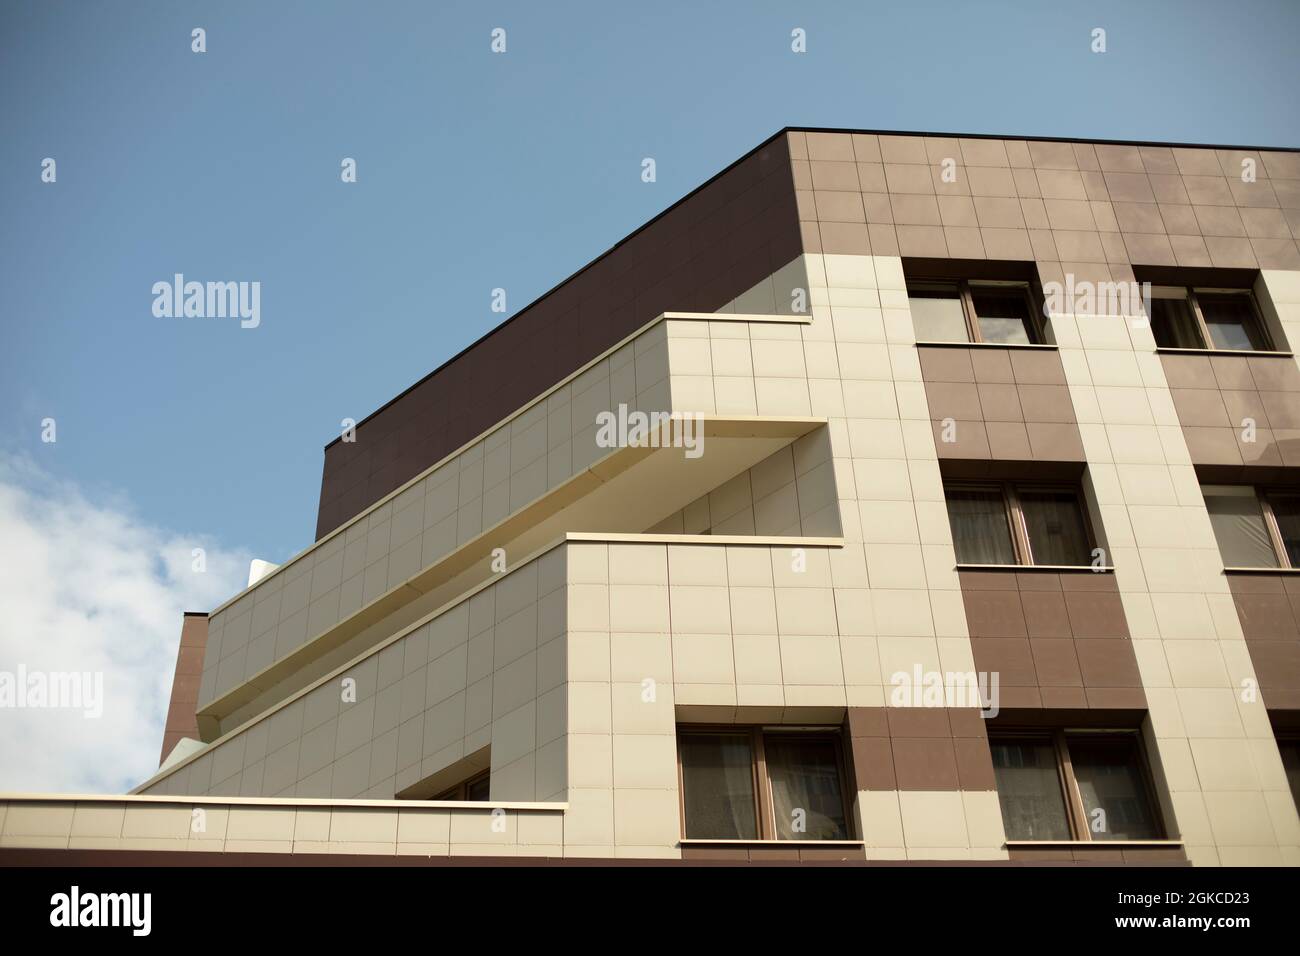 Bâtiment moderne. Revêtement beige et marron dans le bâtiment des bureaux. Détails architecturaux. Trois étages dans le cadre. Banque D'Images